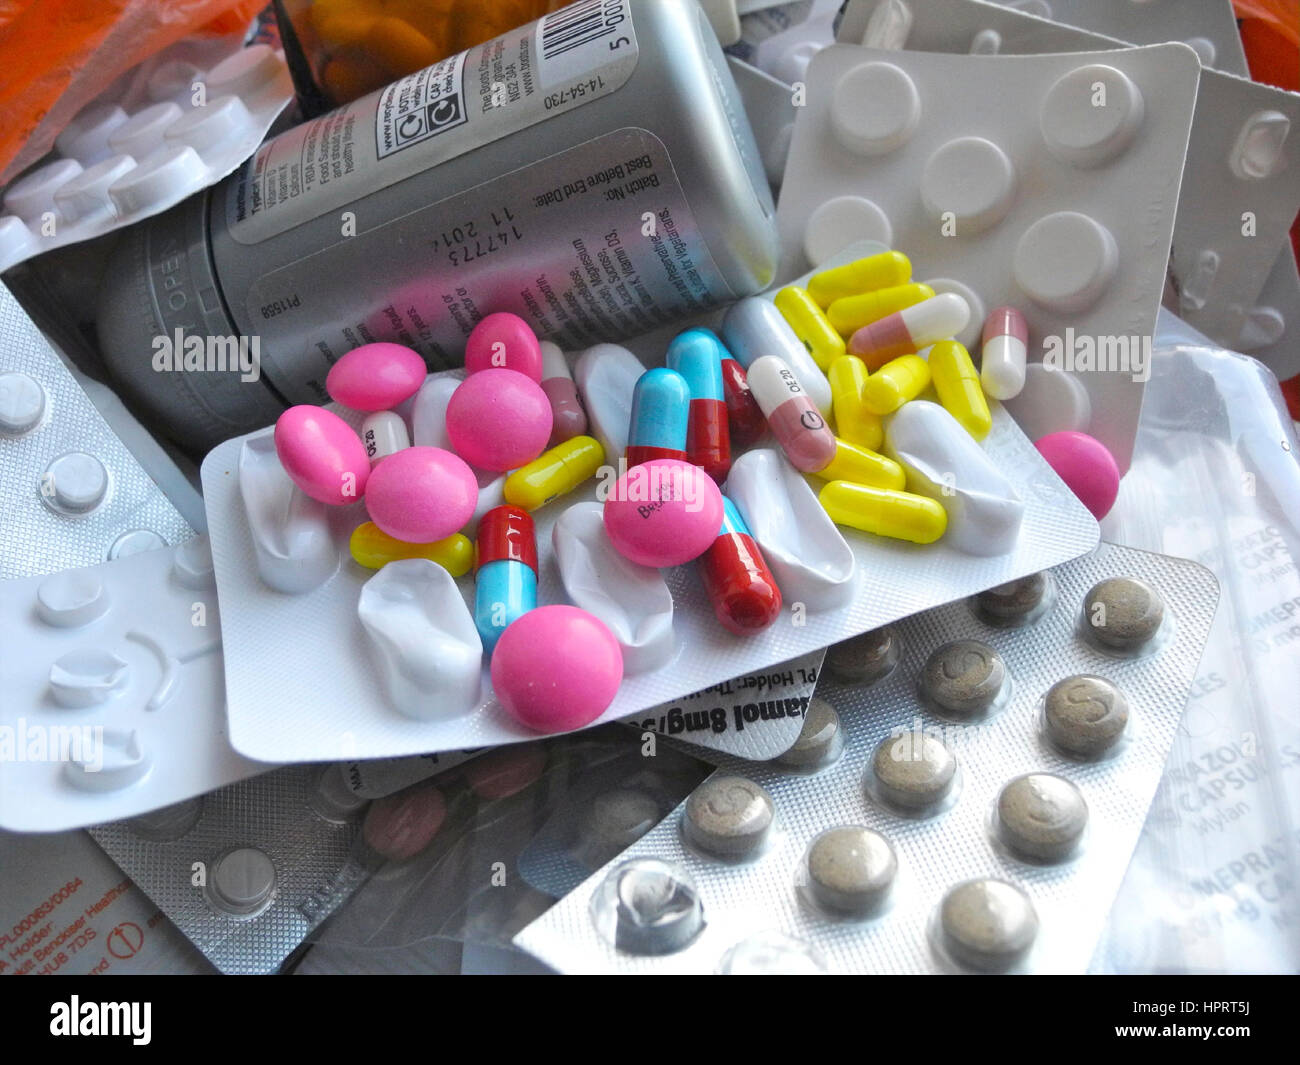 Gibt es eine massive Verschwendung von Ressourcen in die Reihe von verschreibungspflichtigen Medikamenten Tabletten Medikamente Medikamente Pillen die vorgeschriebenen, aber ungenutzt durch Patienten sind, die Kosten zu den National Health Service (NHS) in Großbritannien sind enorm. Stockfoto